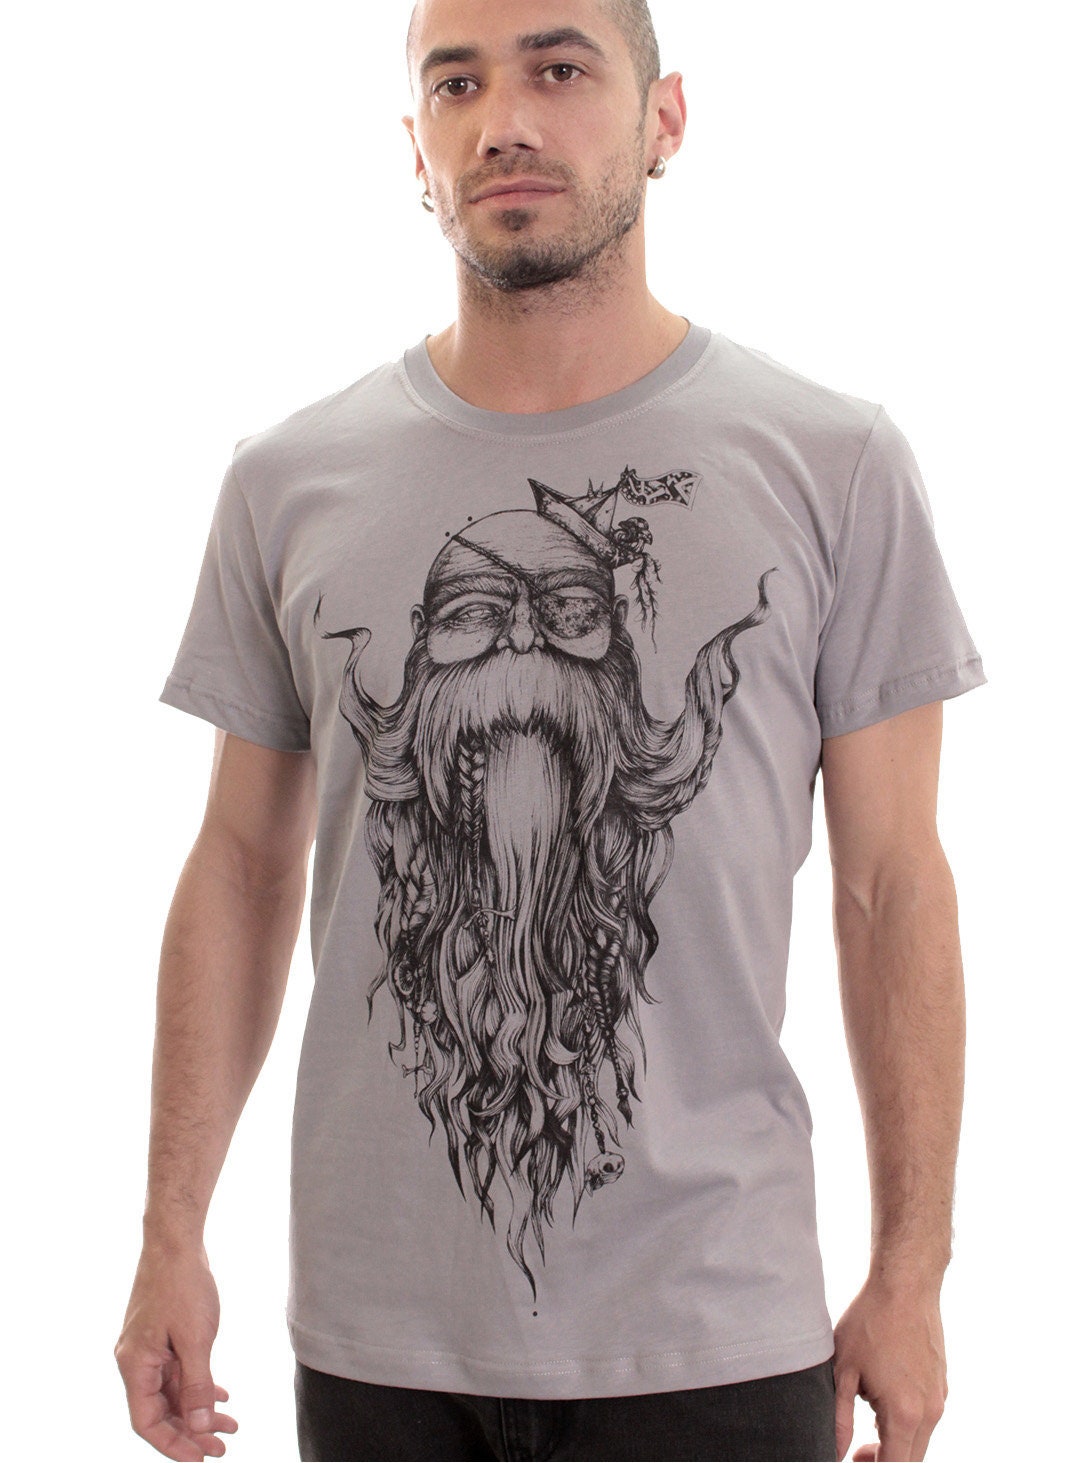 Men's T-shirt Beard Wise Man Graphic Printed Tee Street | Etsy